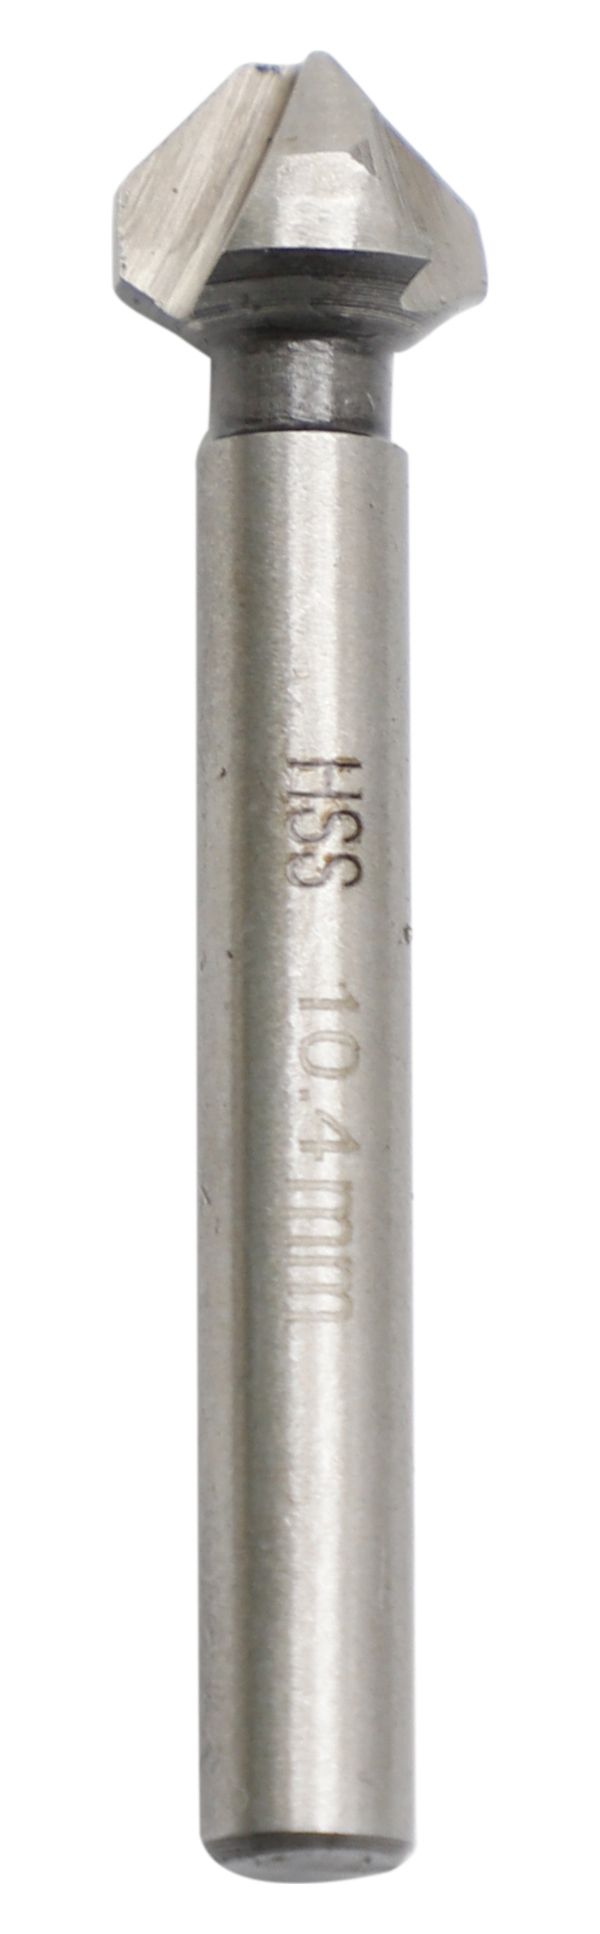 Wickes Countersink Drill Bit - 6 x 10.4 x 55mm